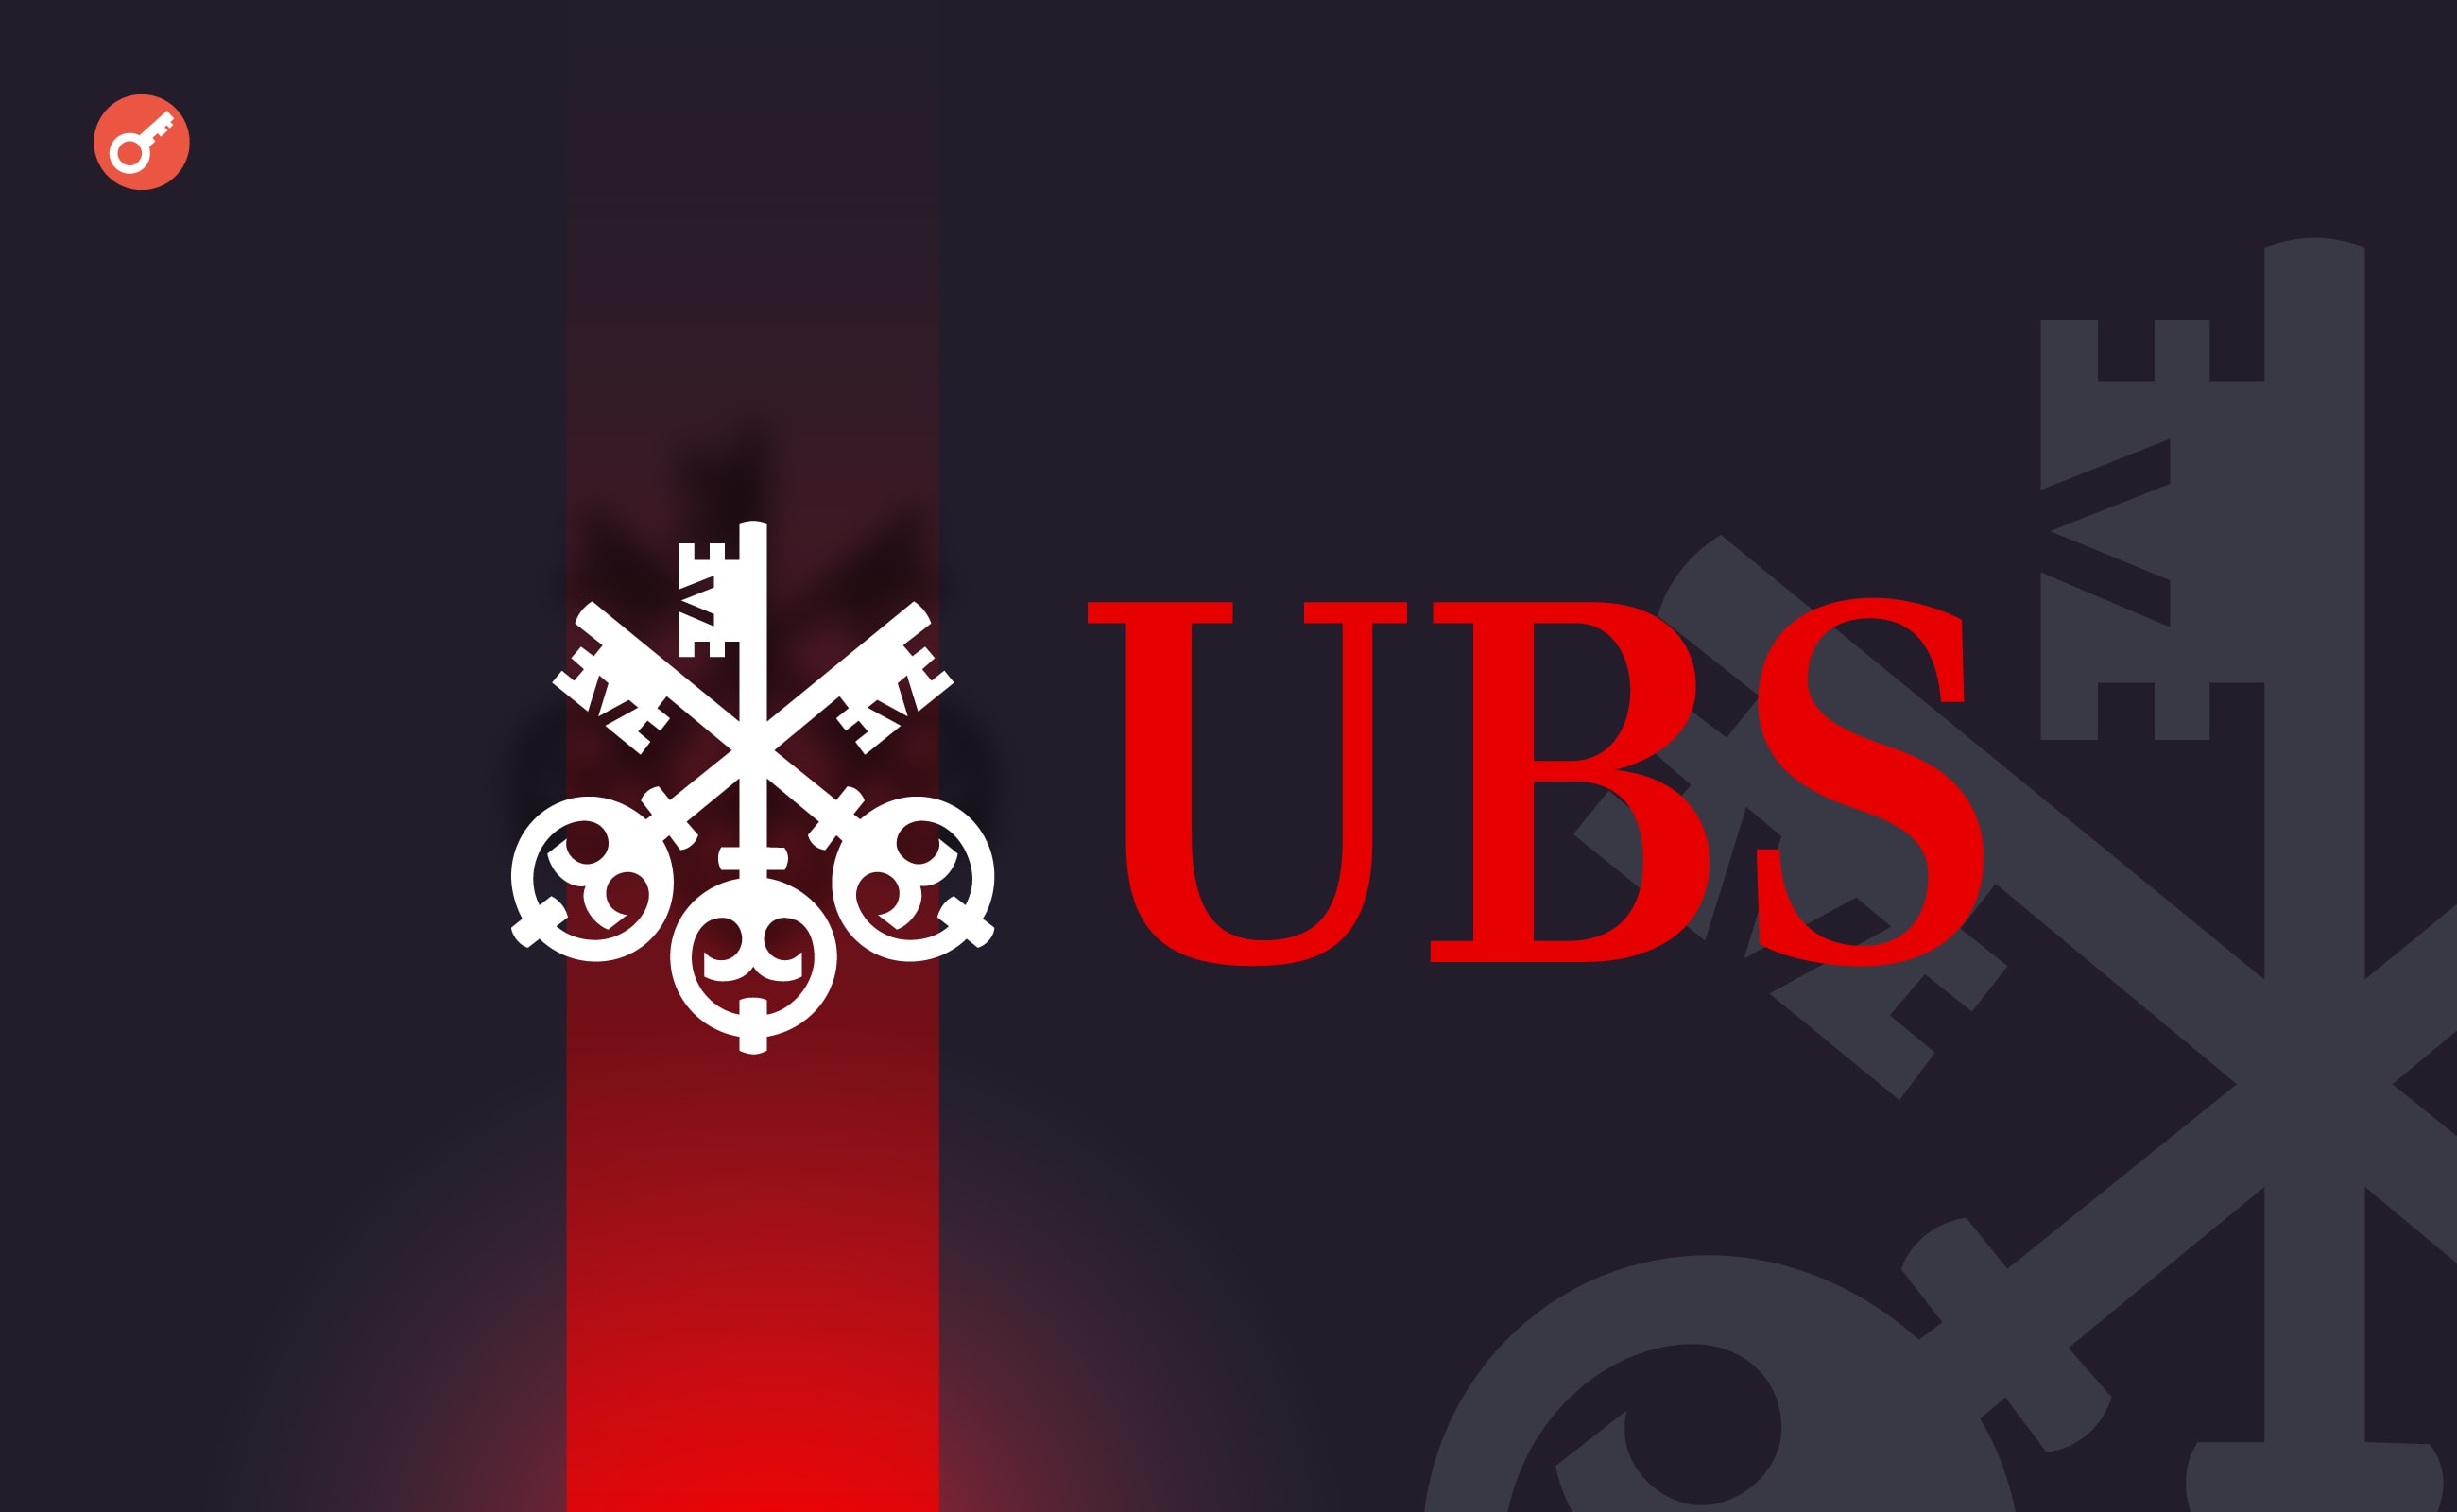 Швейцарський банк UBS почне торгівлю ETF у Гонконзі. Головний колаж новини.